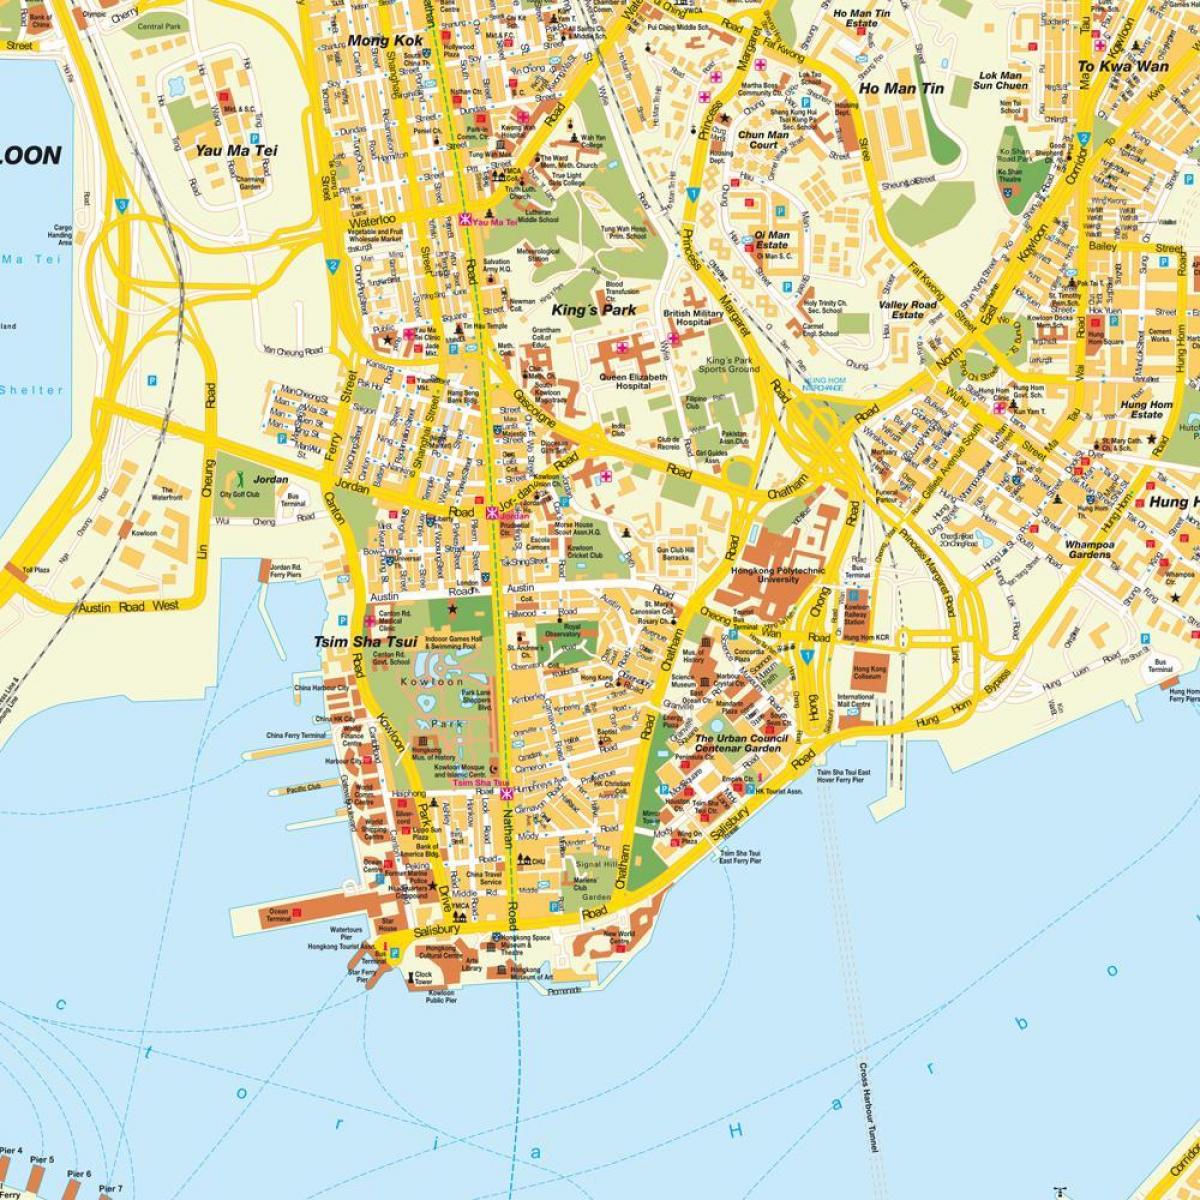 Hong Kong kaupungin kartta